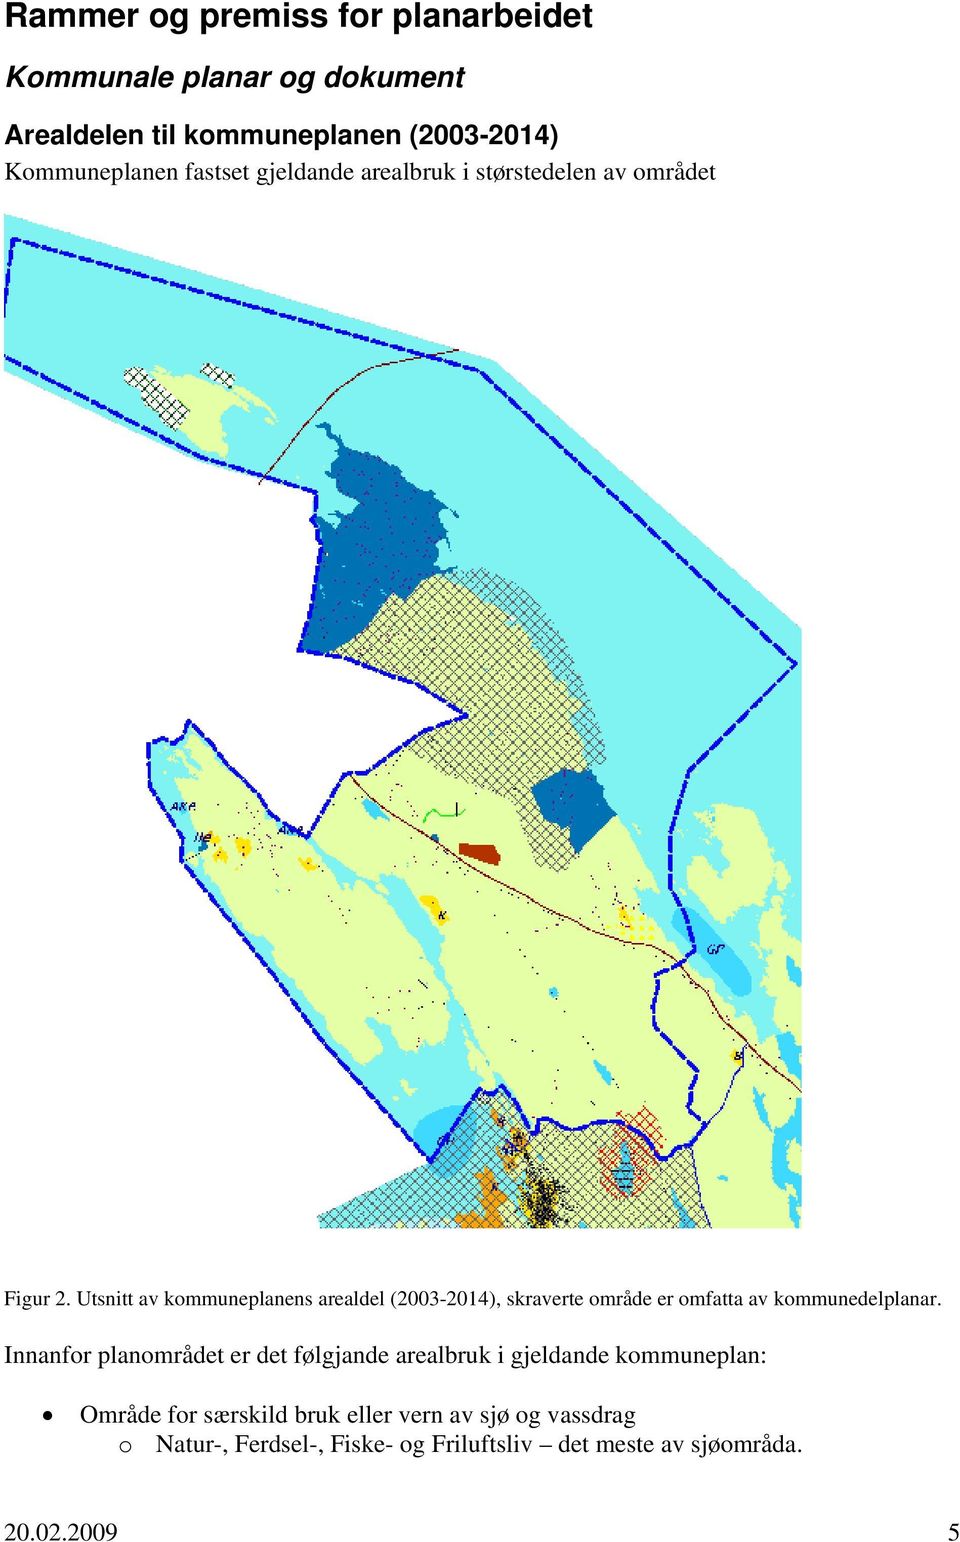 Utsnitt av kommuneplanens arealdel (2003-2014), skraverte område er omfatta av kommunedelplanar.